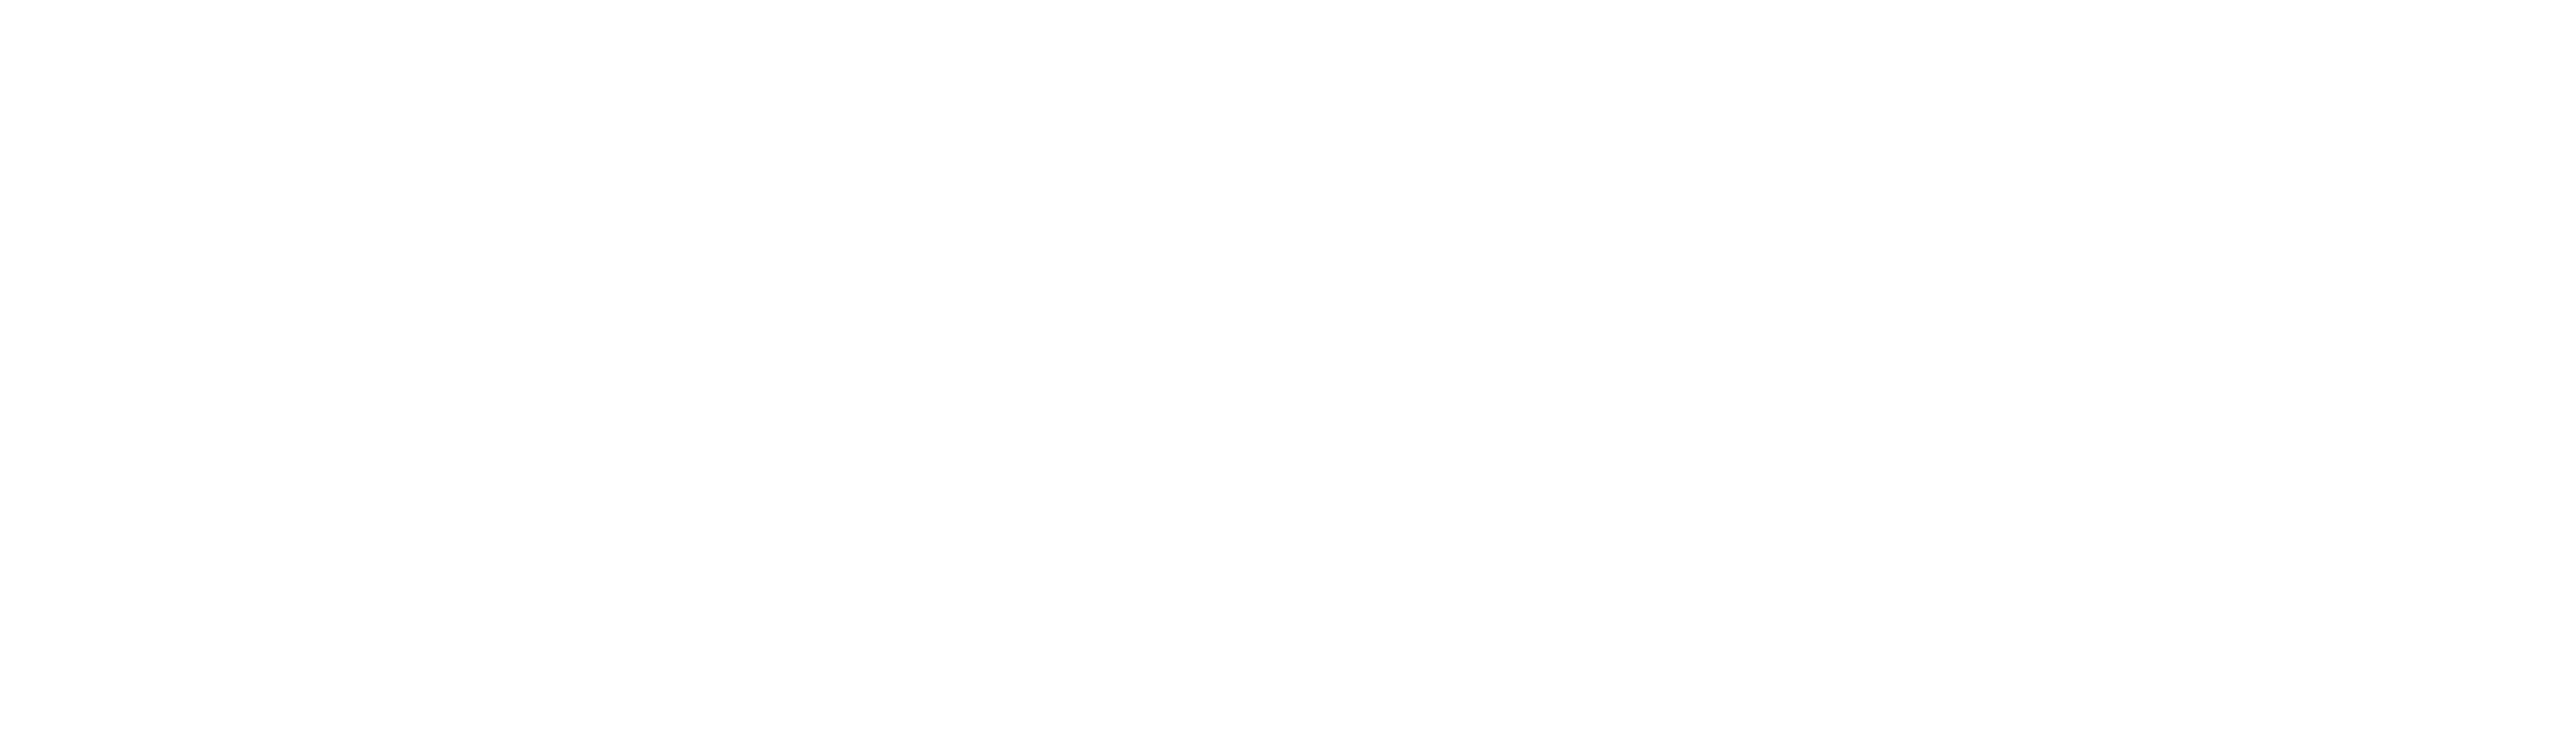 Meridiana Digitale